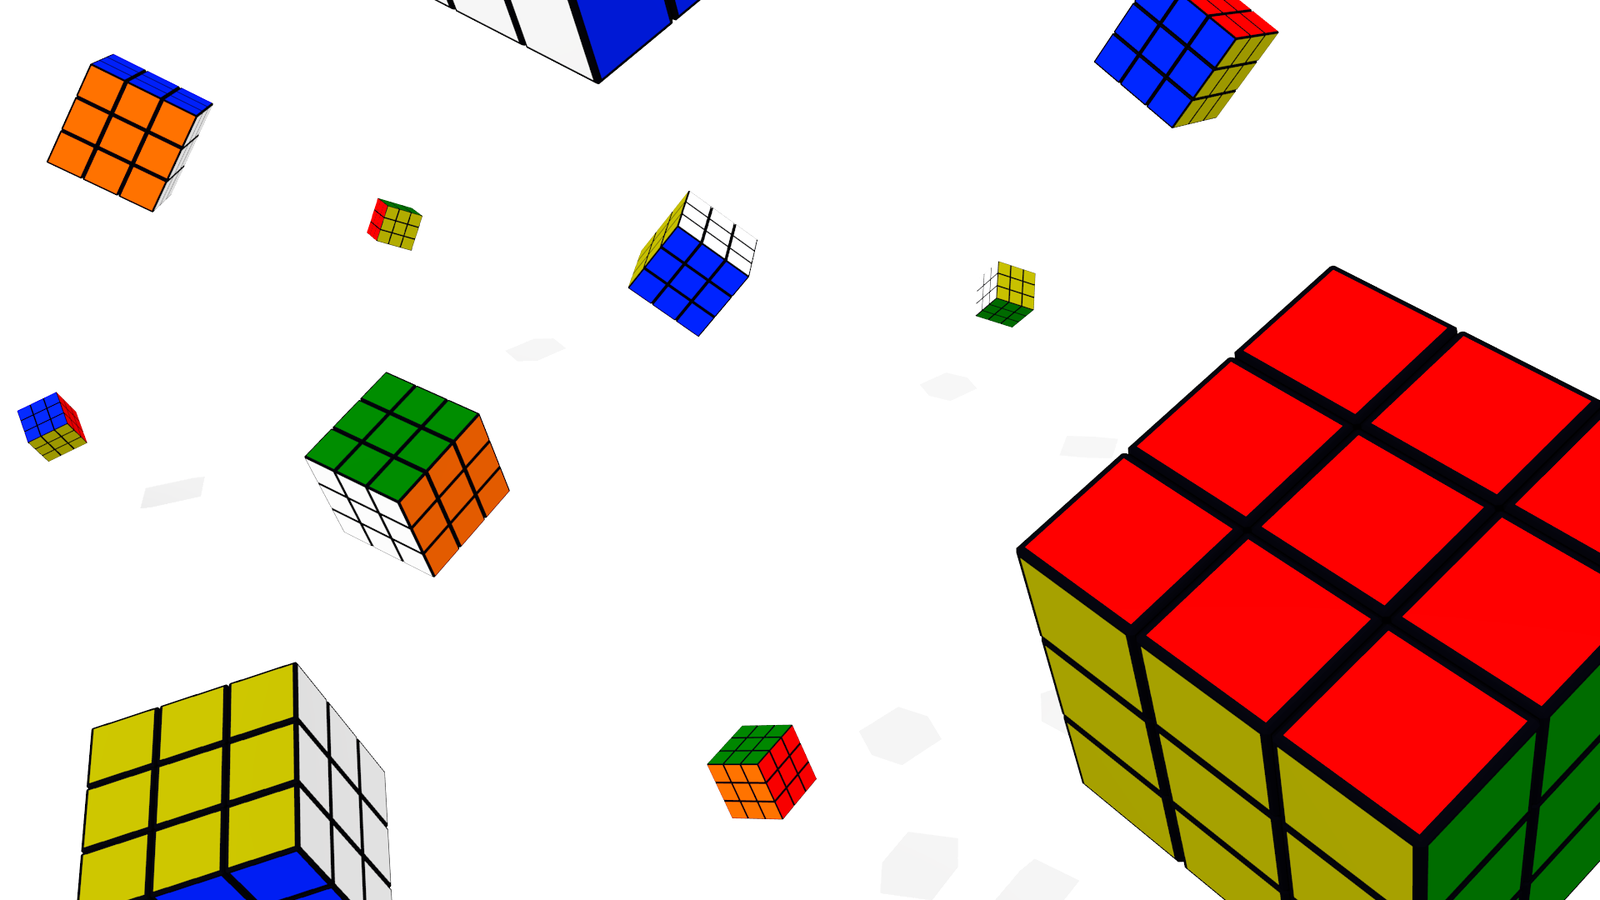 Rubik's Cube Wallpaper - WallpaperSafari